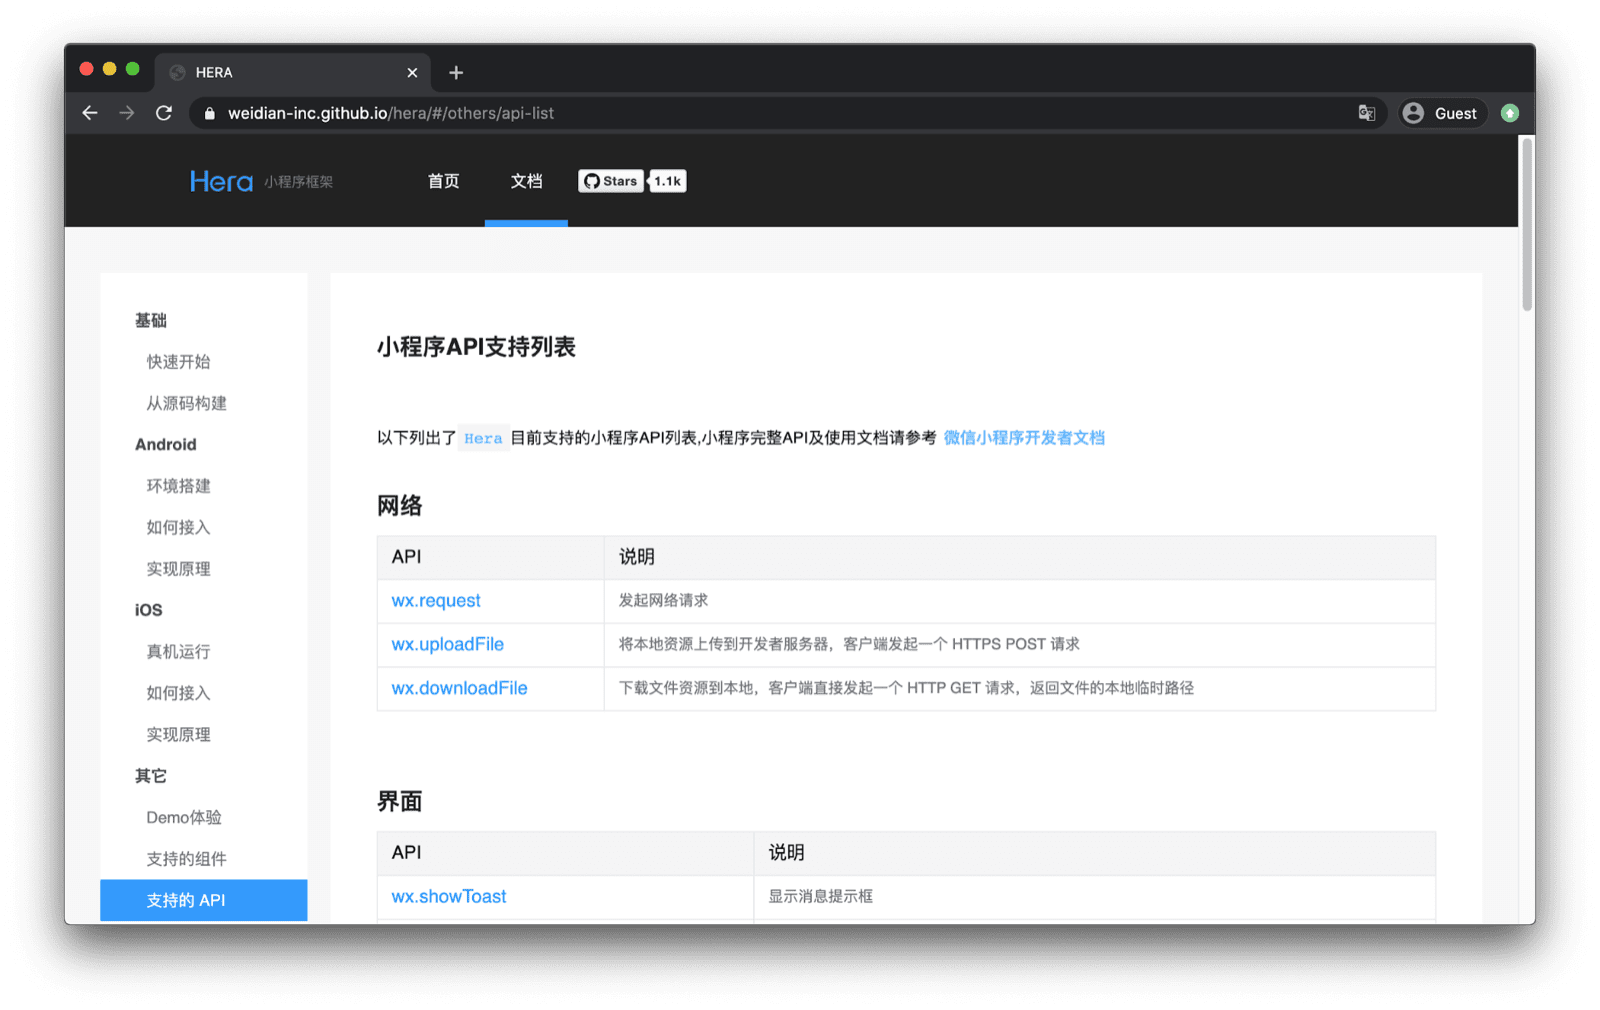 Hera Mini ऐप्लिकेशन फ़्रेमवर्क के दस्तावेज़, जिसमें WeChat एपीआई के साथ काम करने वाले एपीआई के बारे में बताया गया है. जैसे, `wx.request`, `wx.uploadFile` वगैरह.